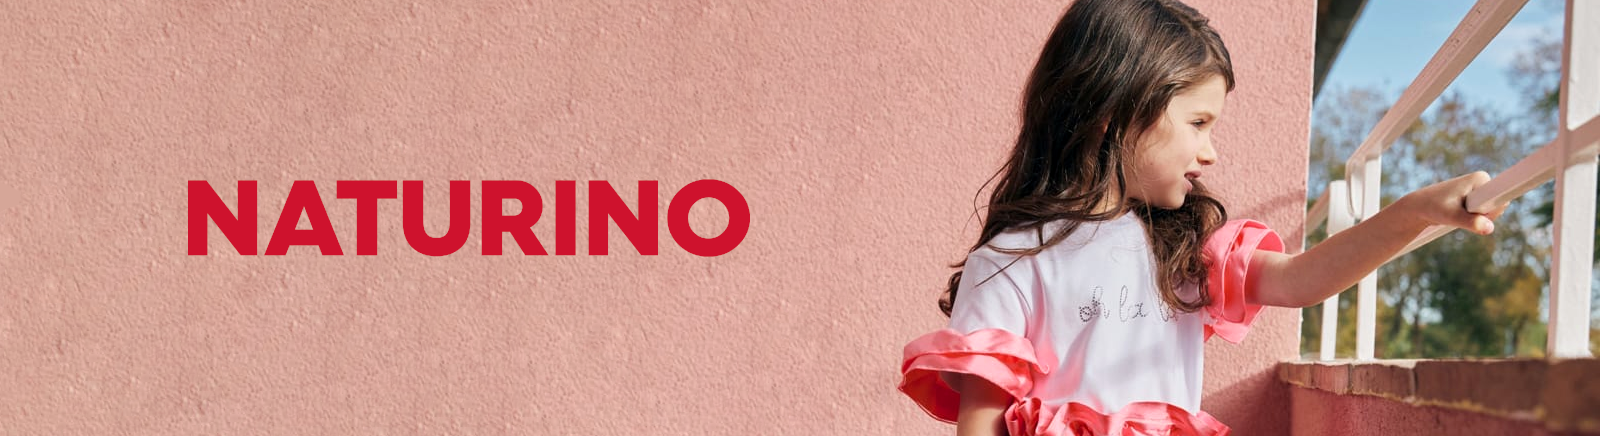 Juppen: Naturino/Falcotto Stiefel für Mädchen und Jungen online shoppen